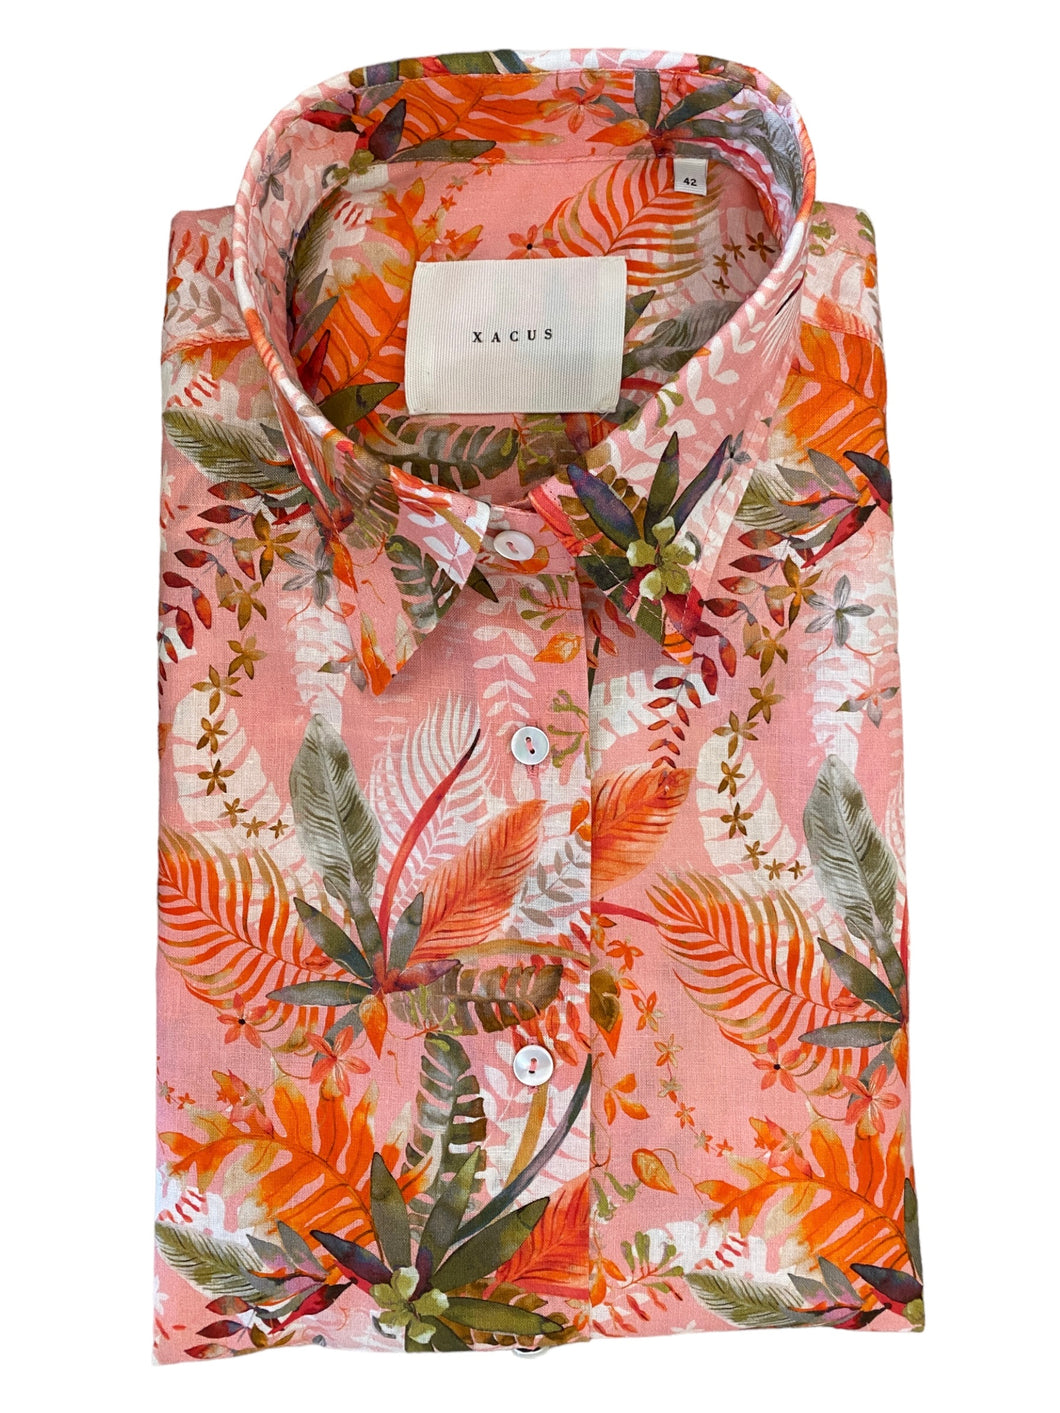 Xacus Women's Shirt - Coral Tropic